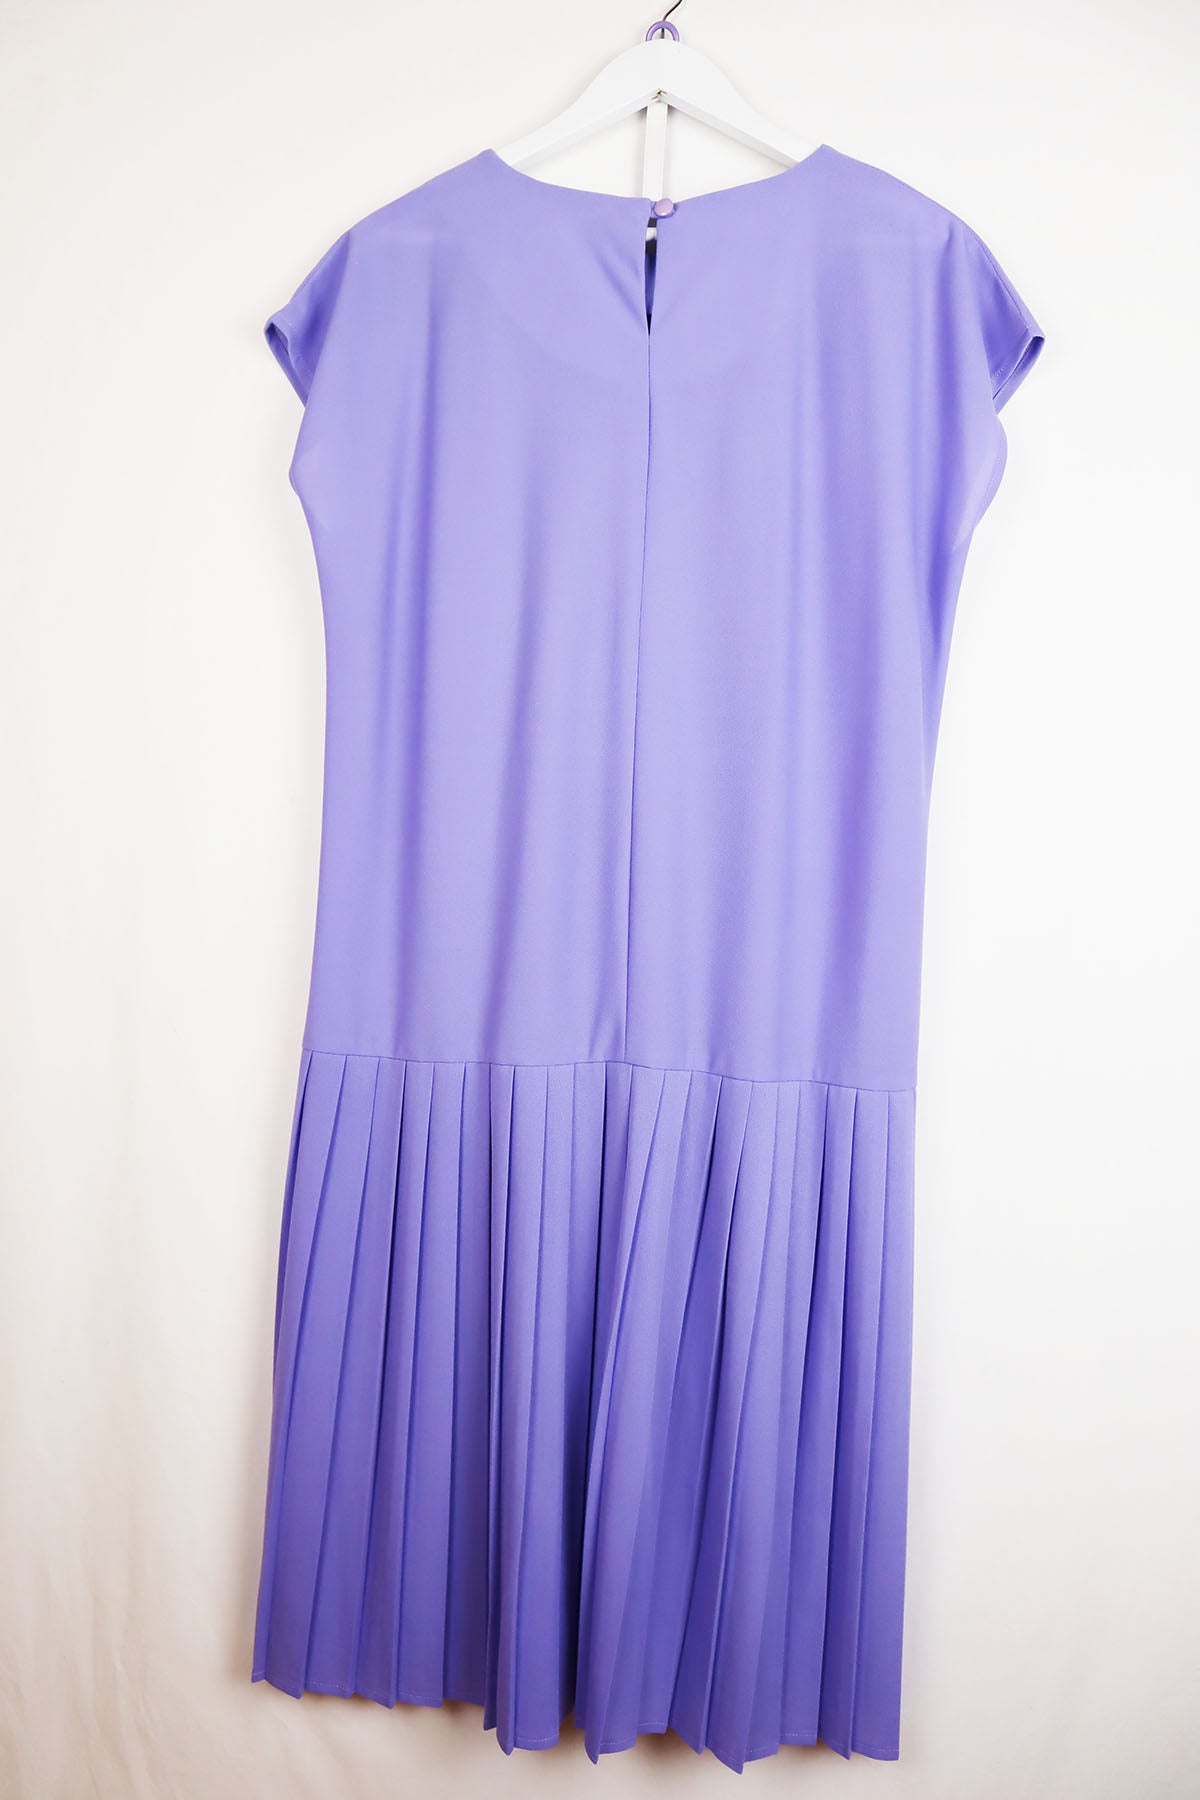 Kleid Vintage Lila ( Gr. L )